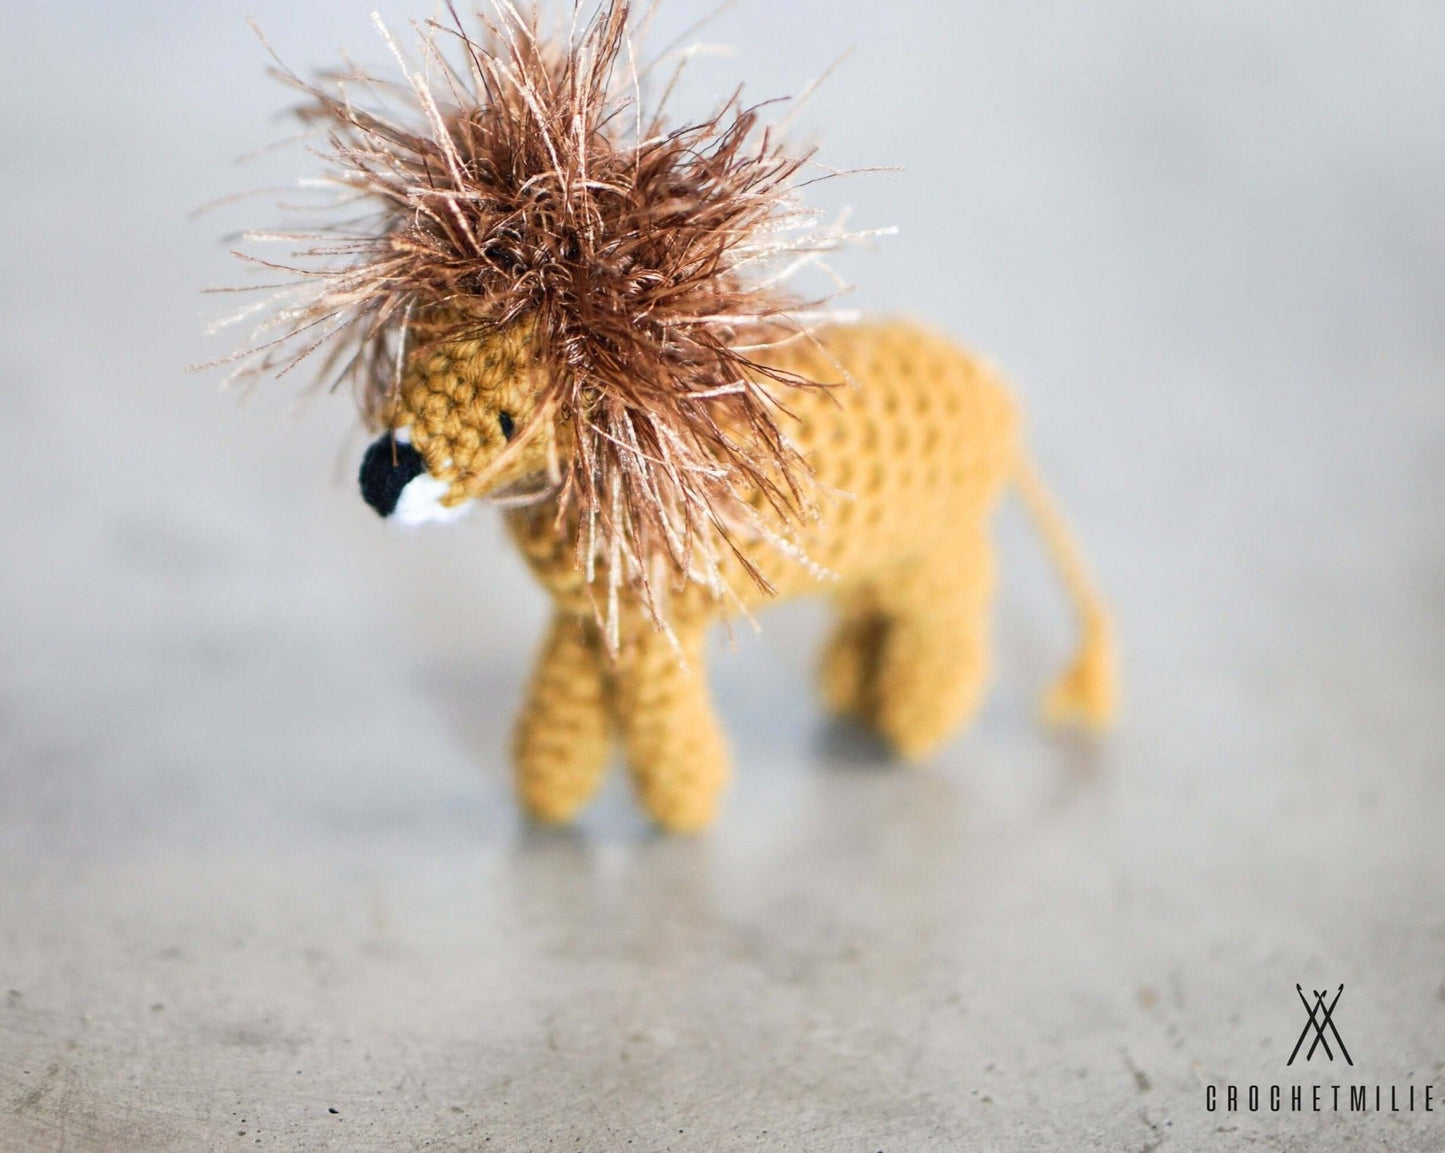 Patron au crochet - Les animaux du safari - Crochetmilie